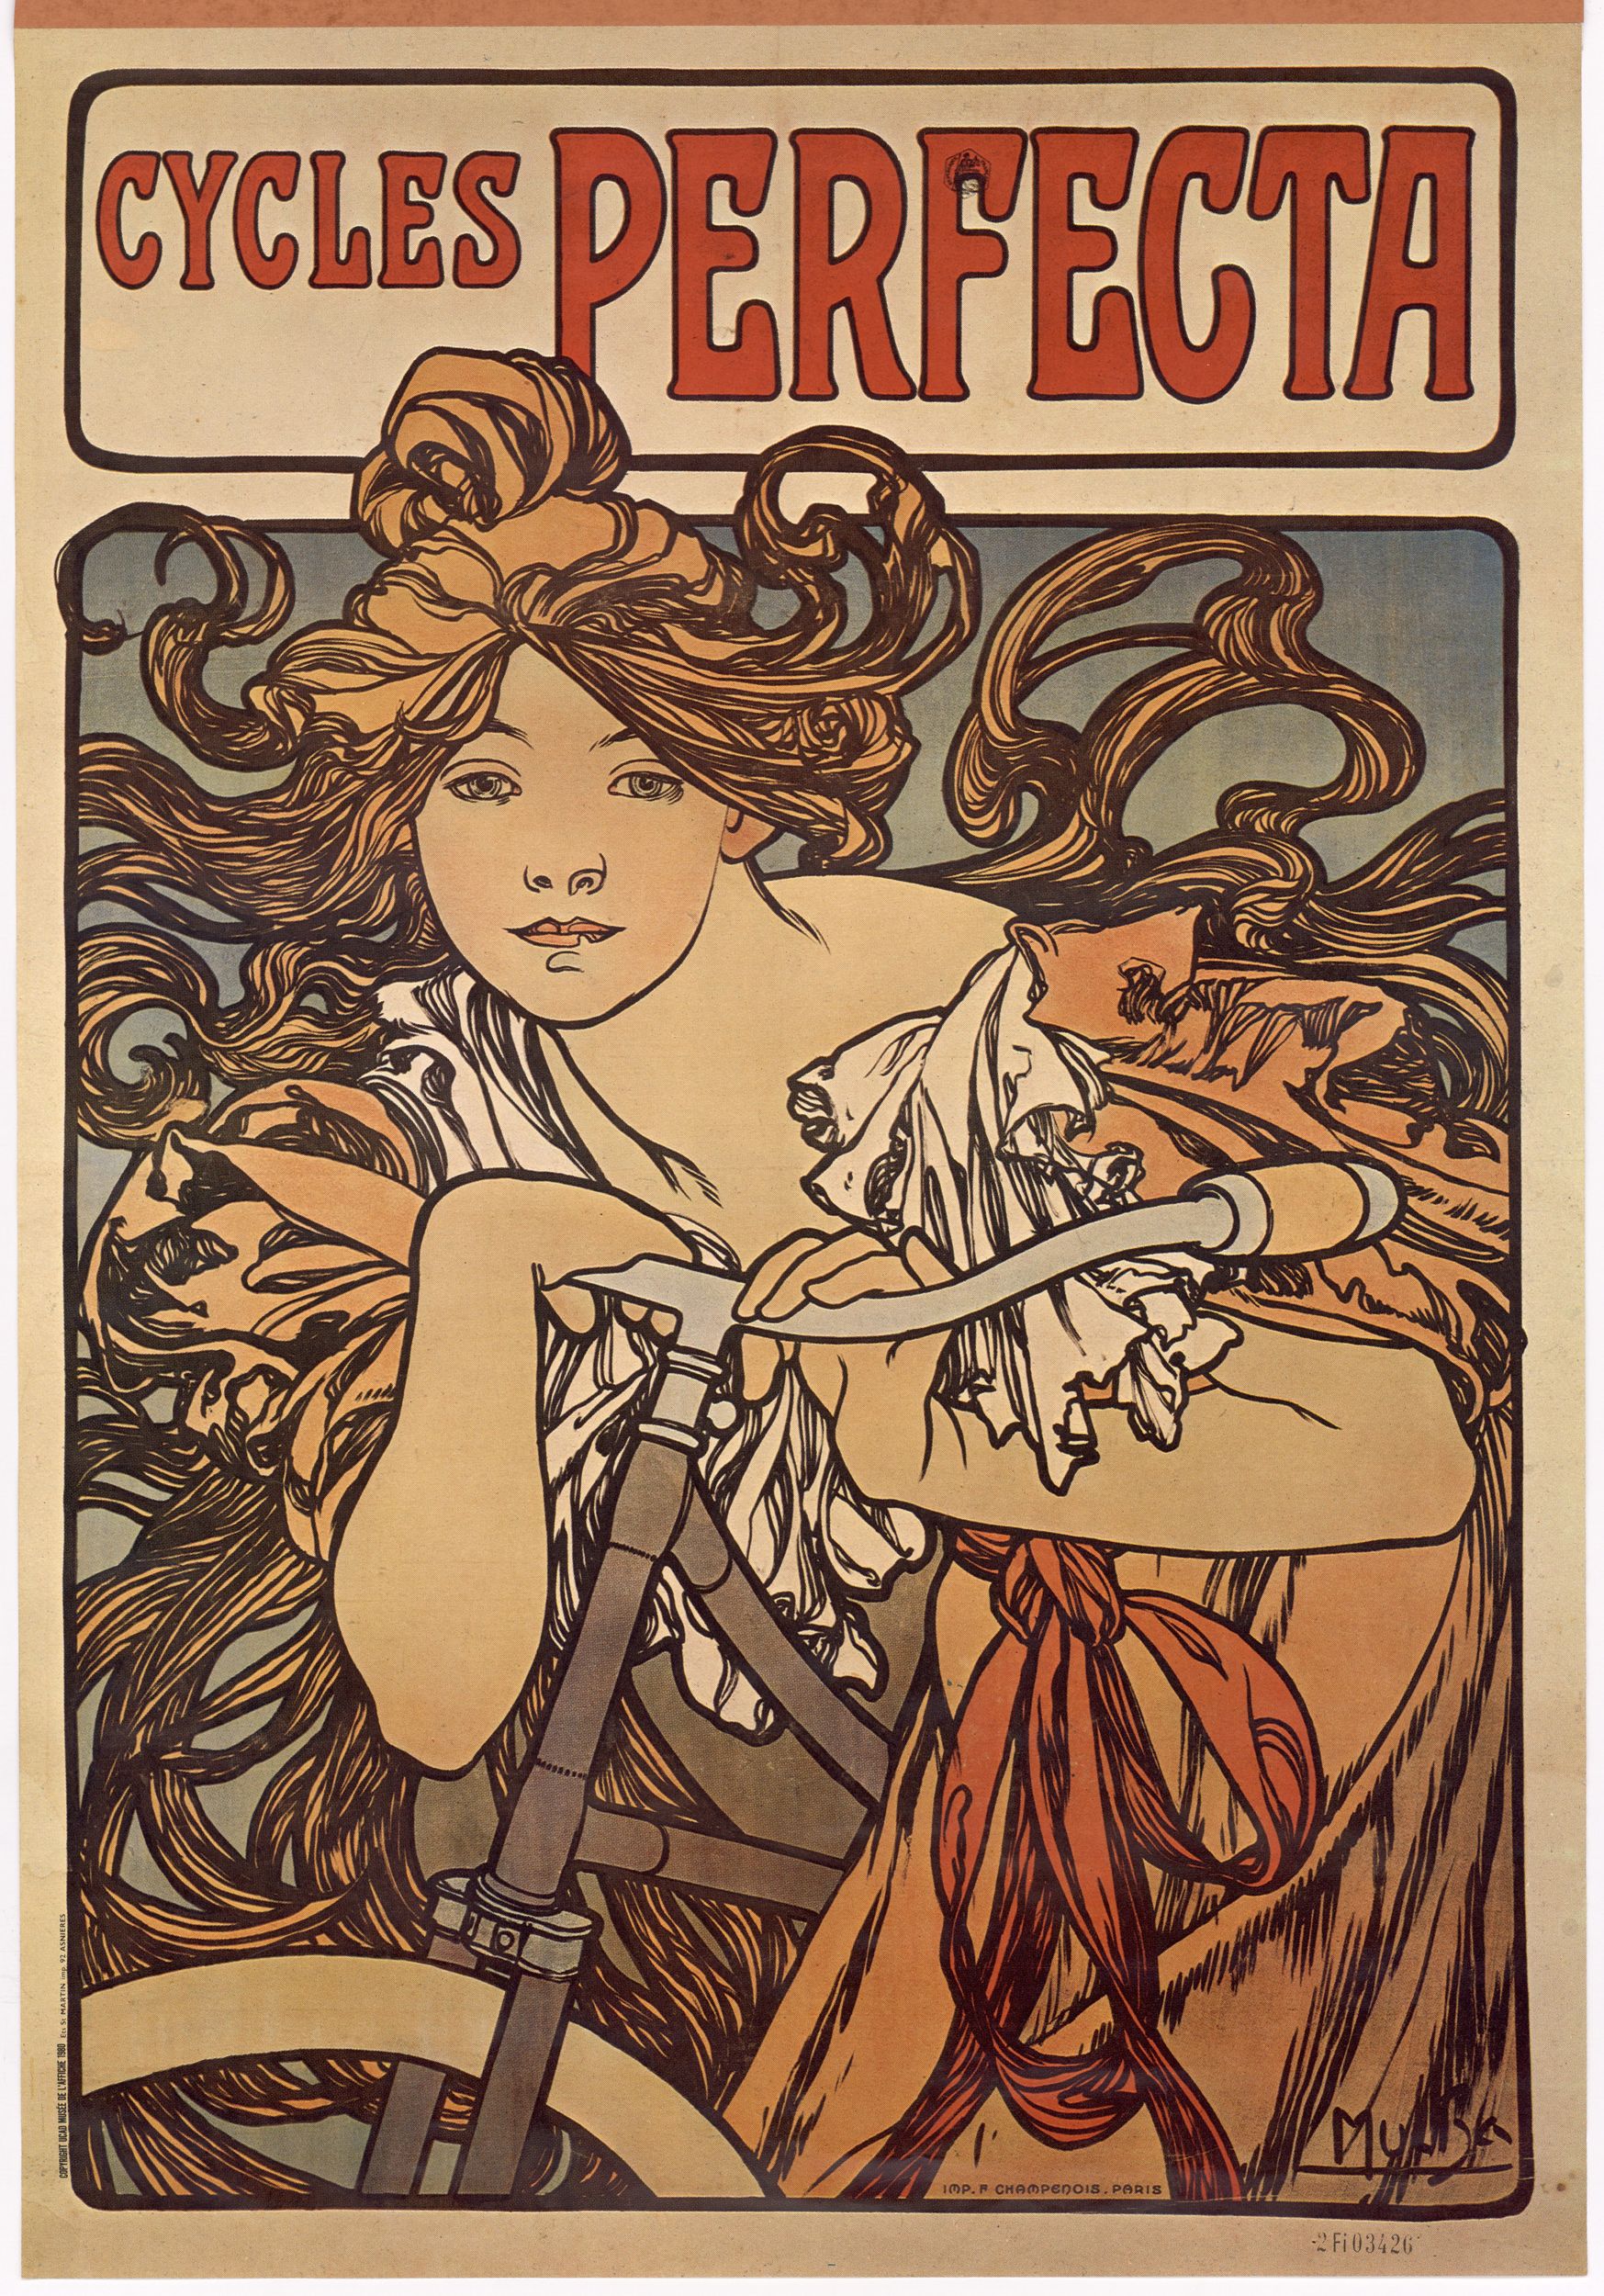 Cycles Perfecta : affiche publicitaire couleur par Alfons Mucha (1900, cote : 2FI/3426)